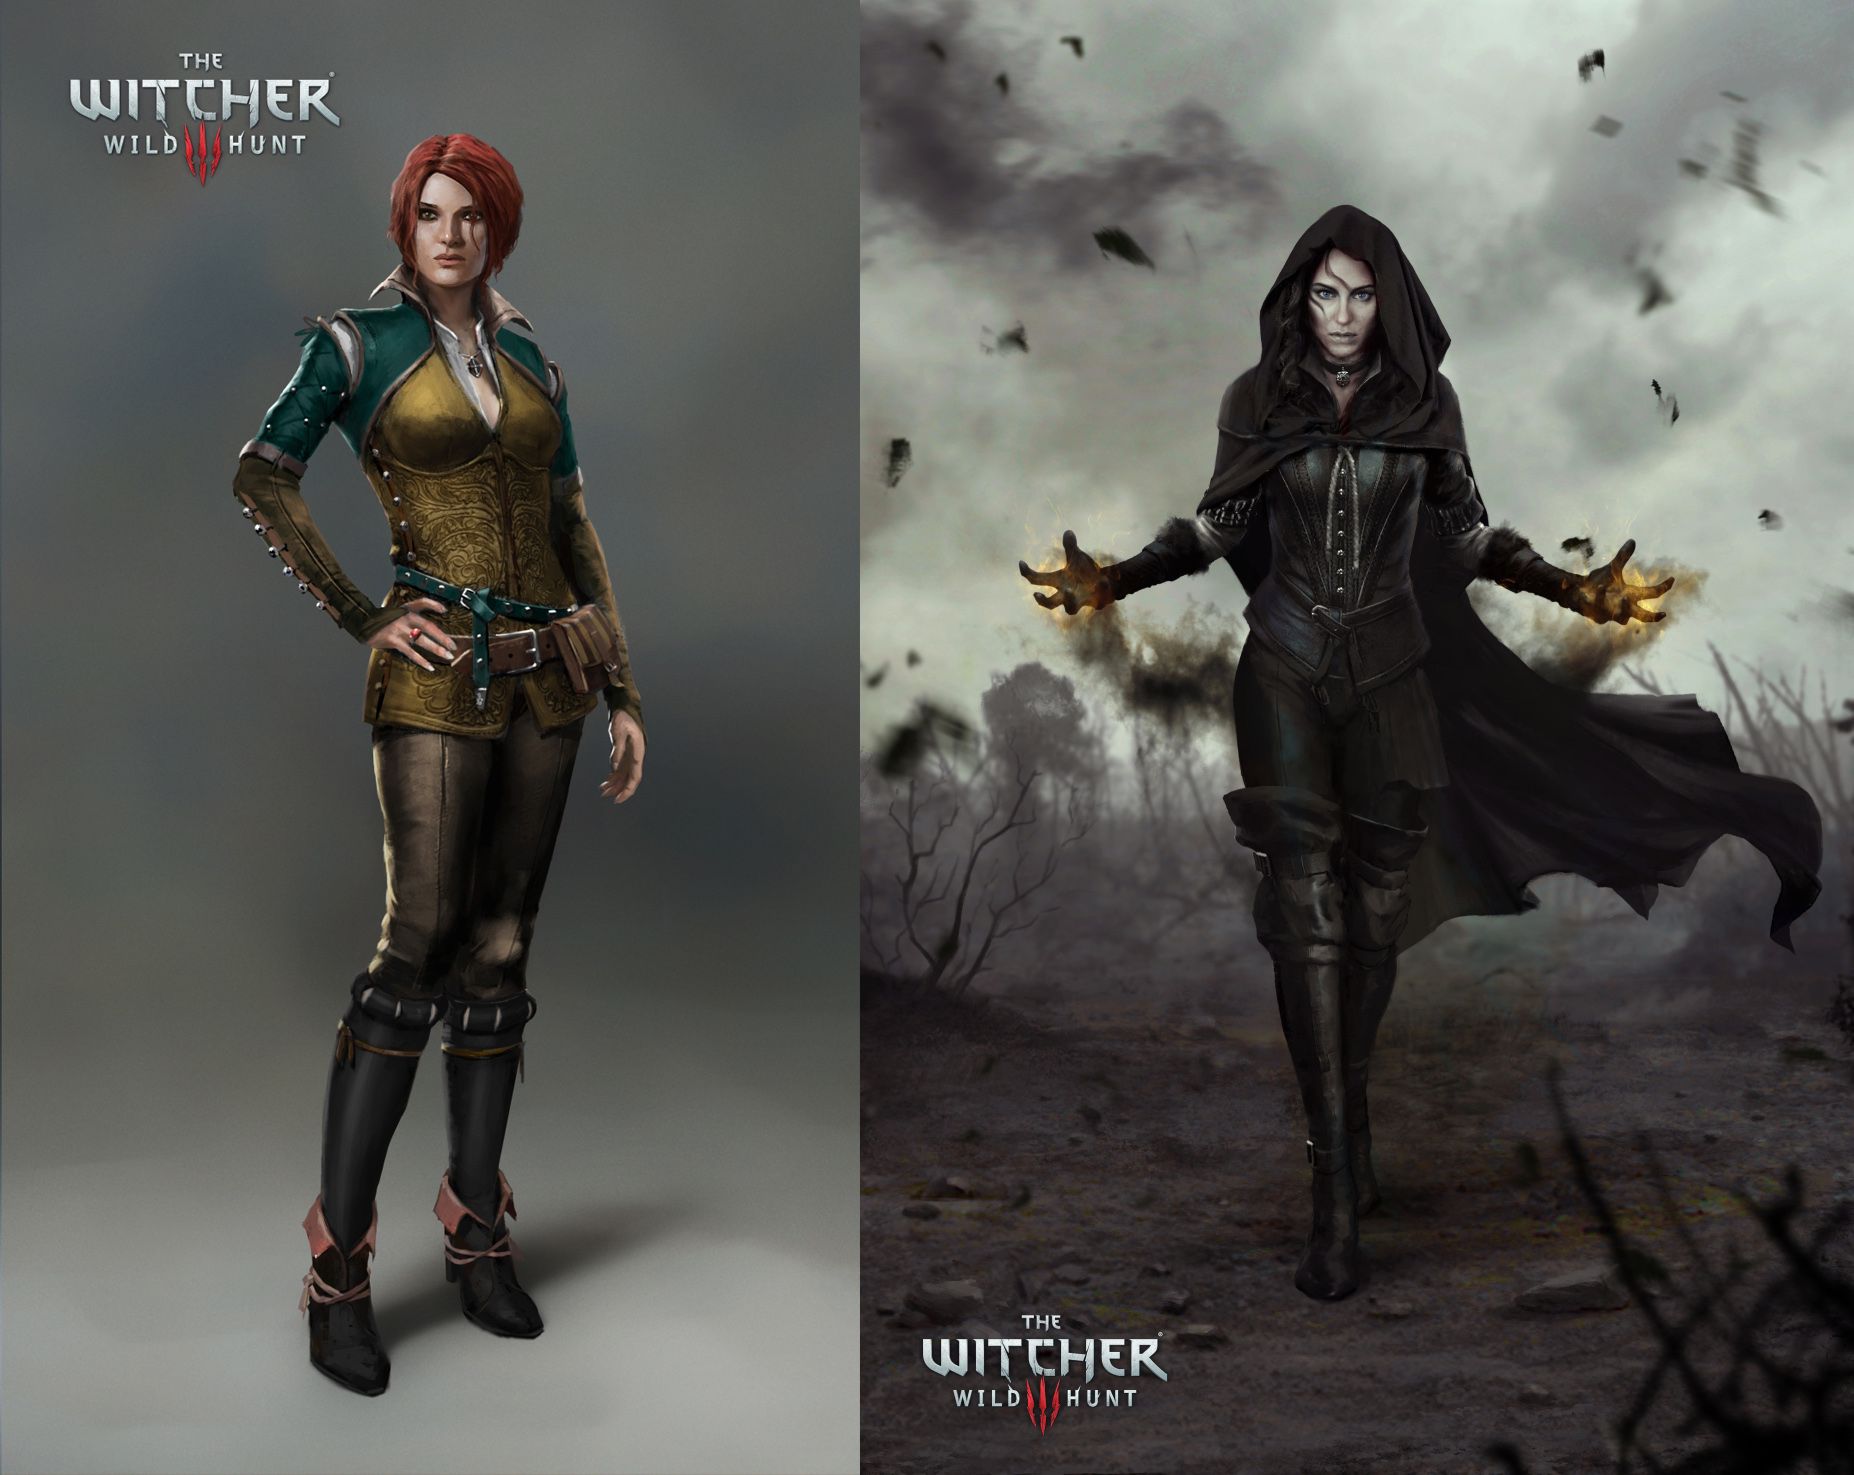 Witcher 3 Wallpaper Phone - HD Wallpaper 